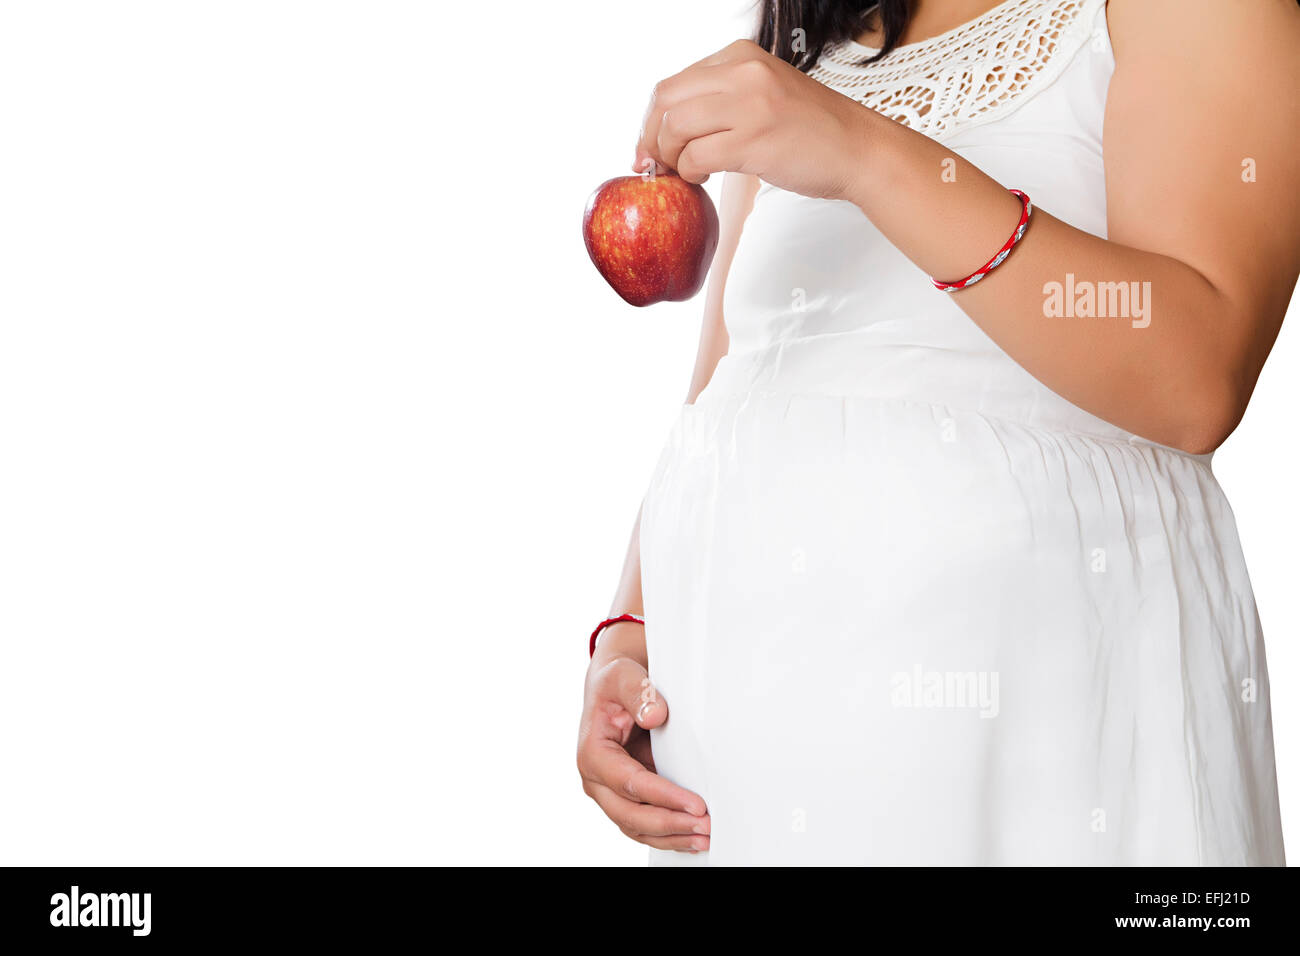 1 La gravidanza della donna Cucina dietetica apple Foto Stock